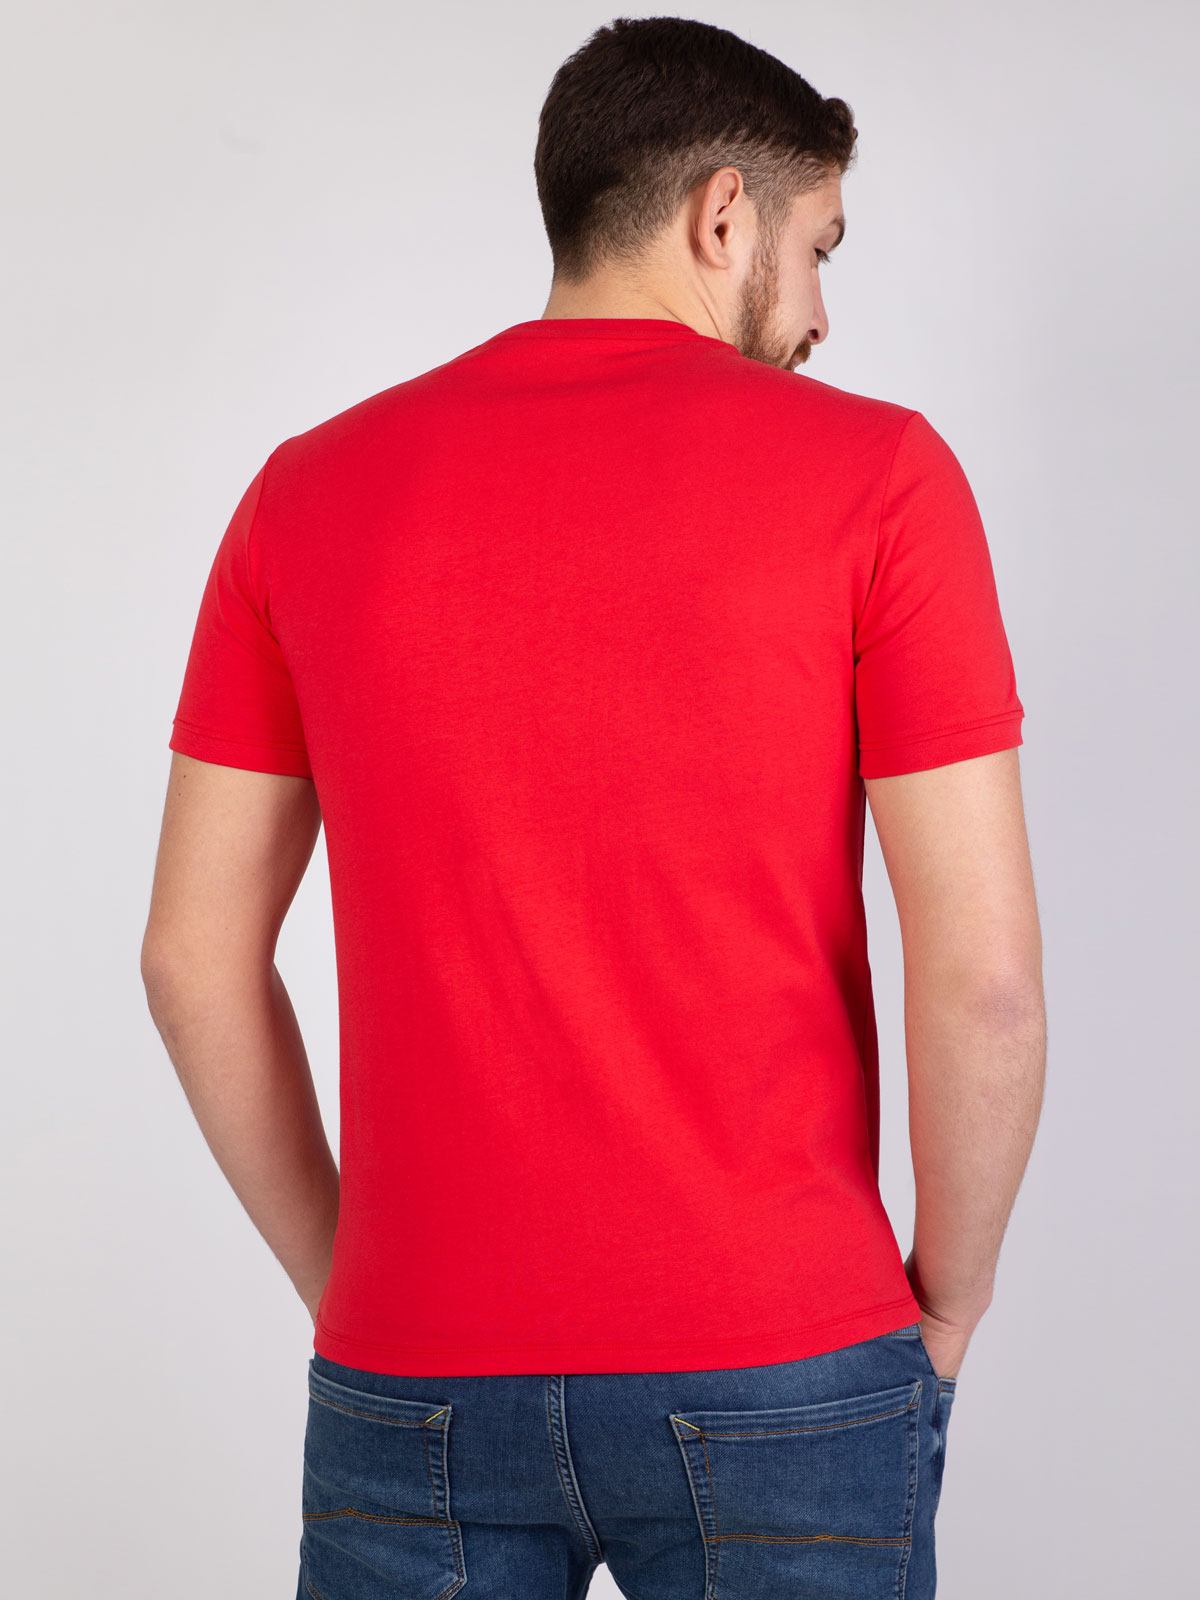 Червена тениска със син печат - 96389 39.00 лв img4